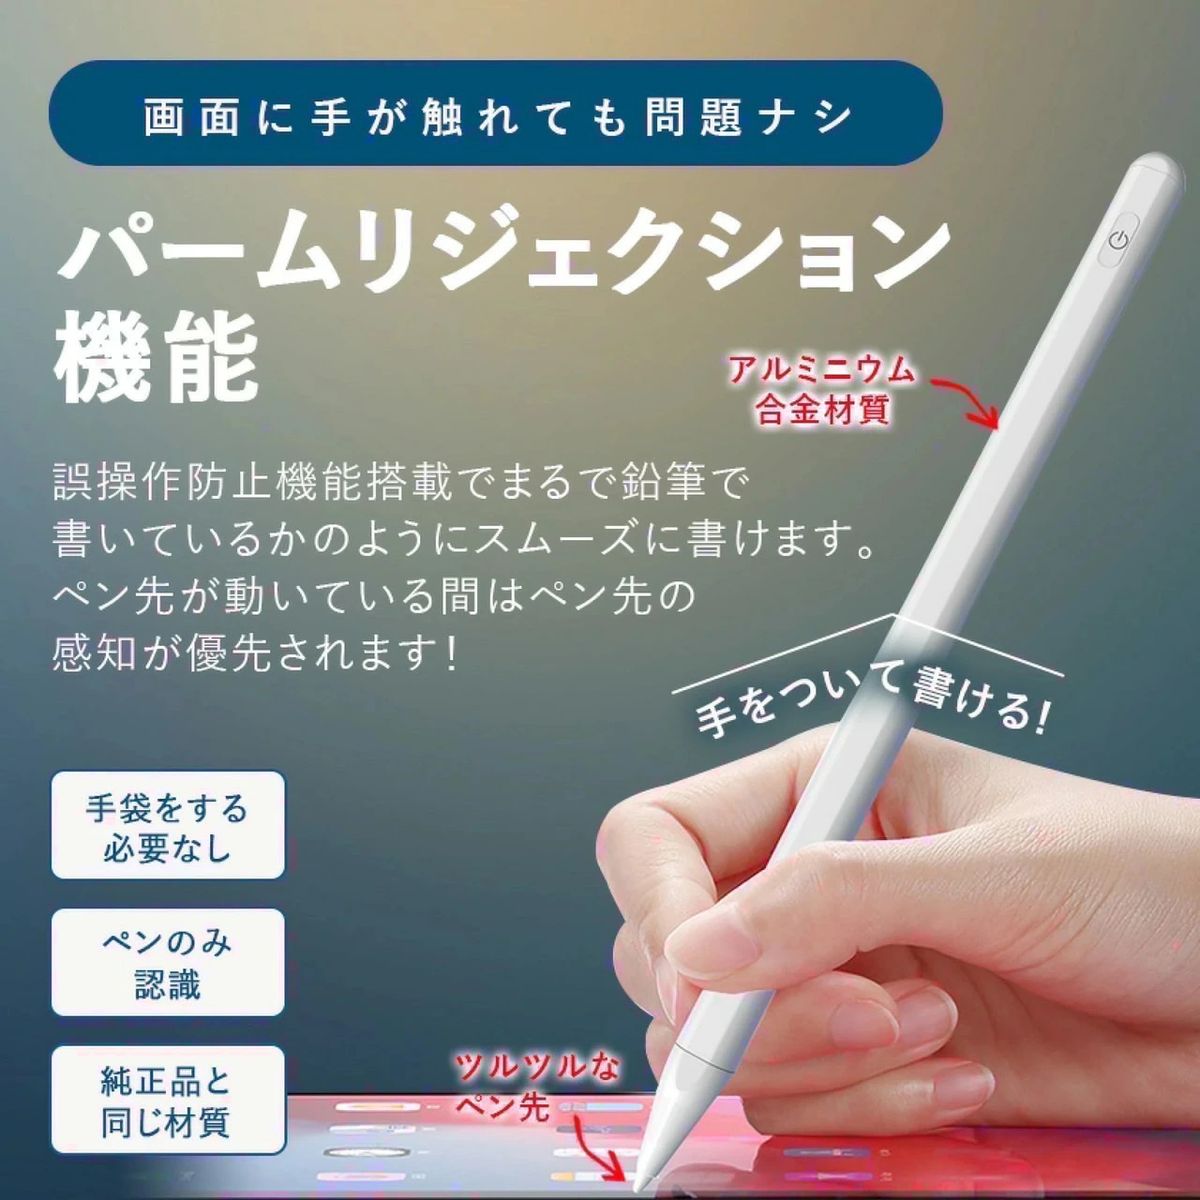 iPad ペンシル タッチペン 第10世代対応 iPad スタイラスペン iPad pen 極細 磁気吸着 誤作動防止 ホワイト